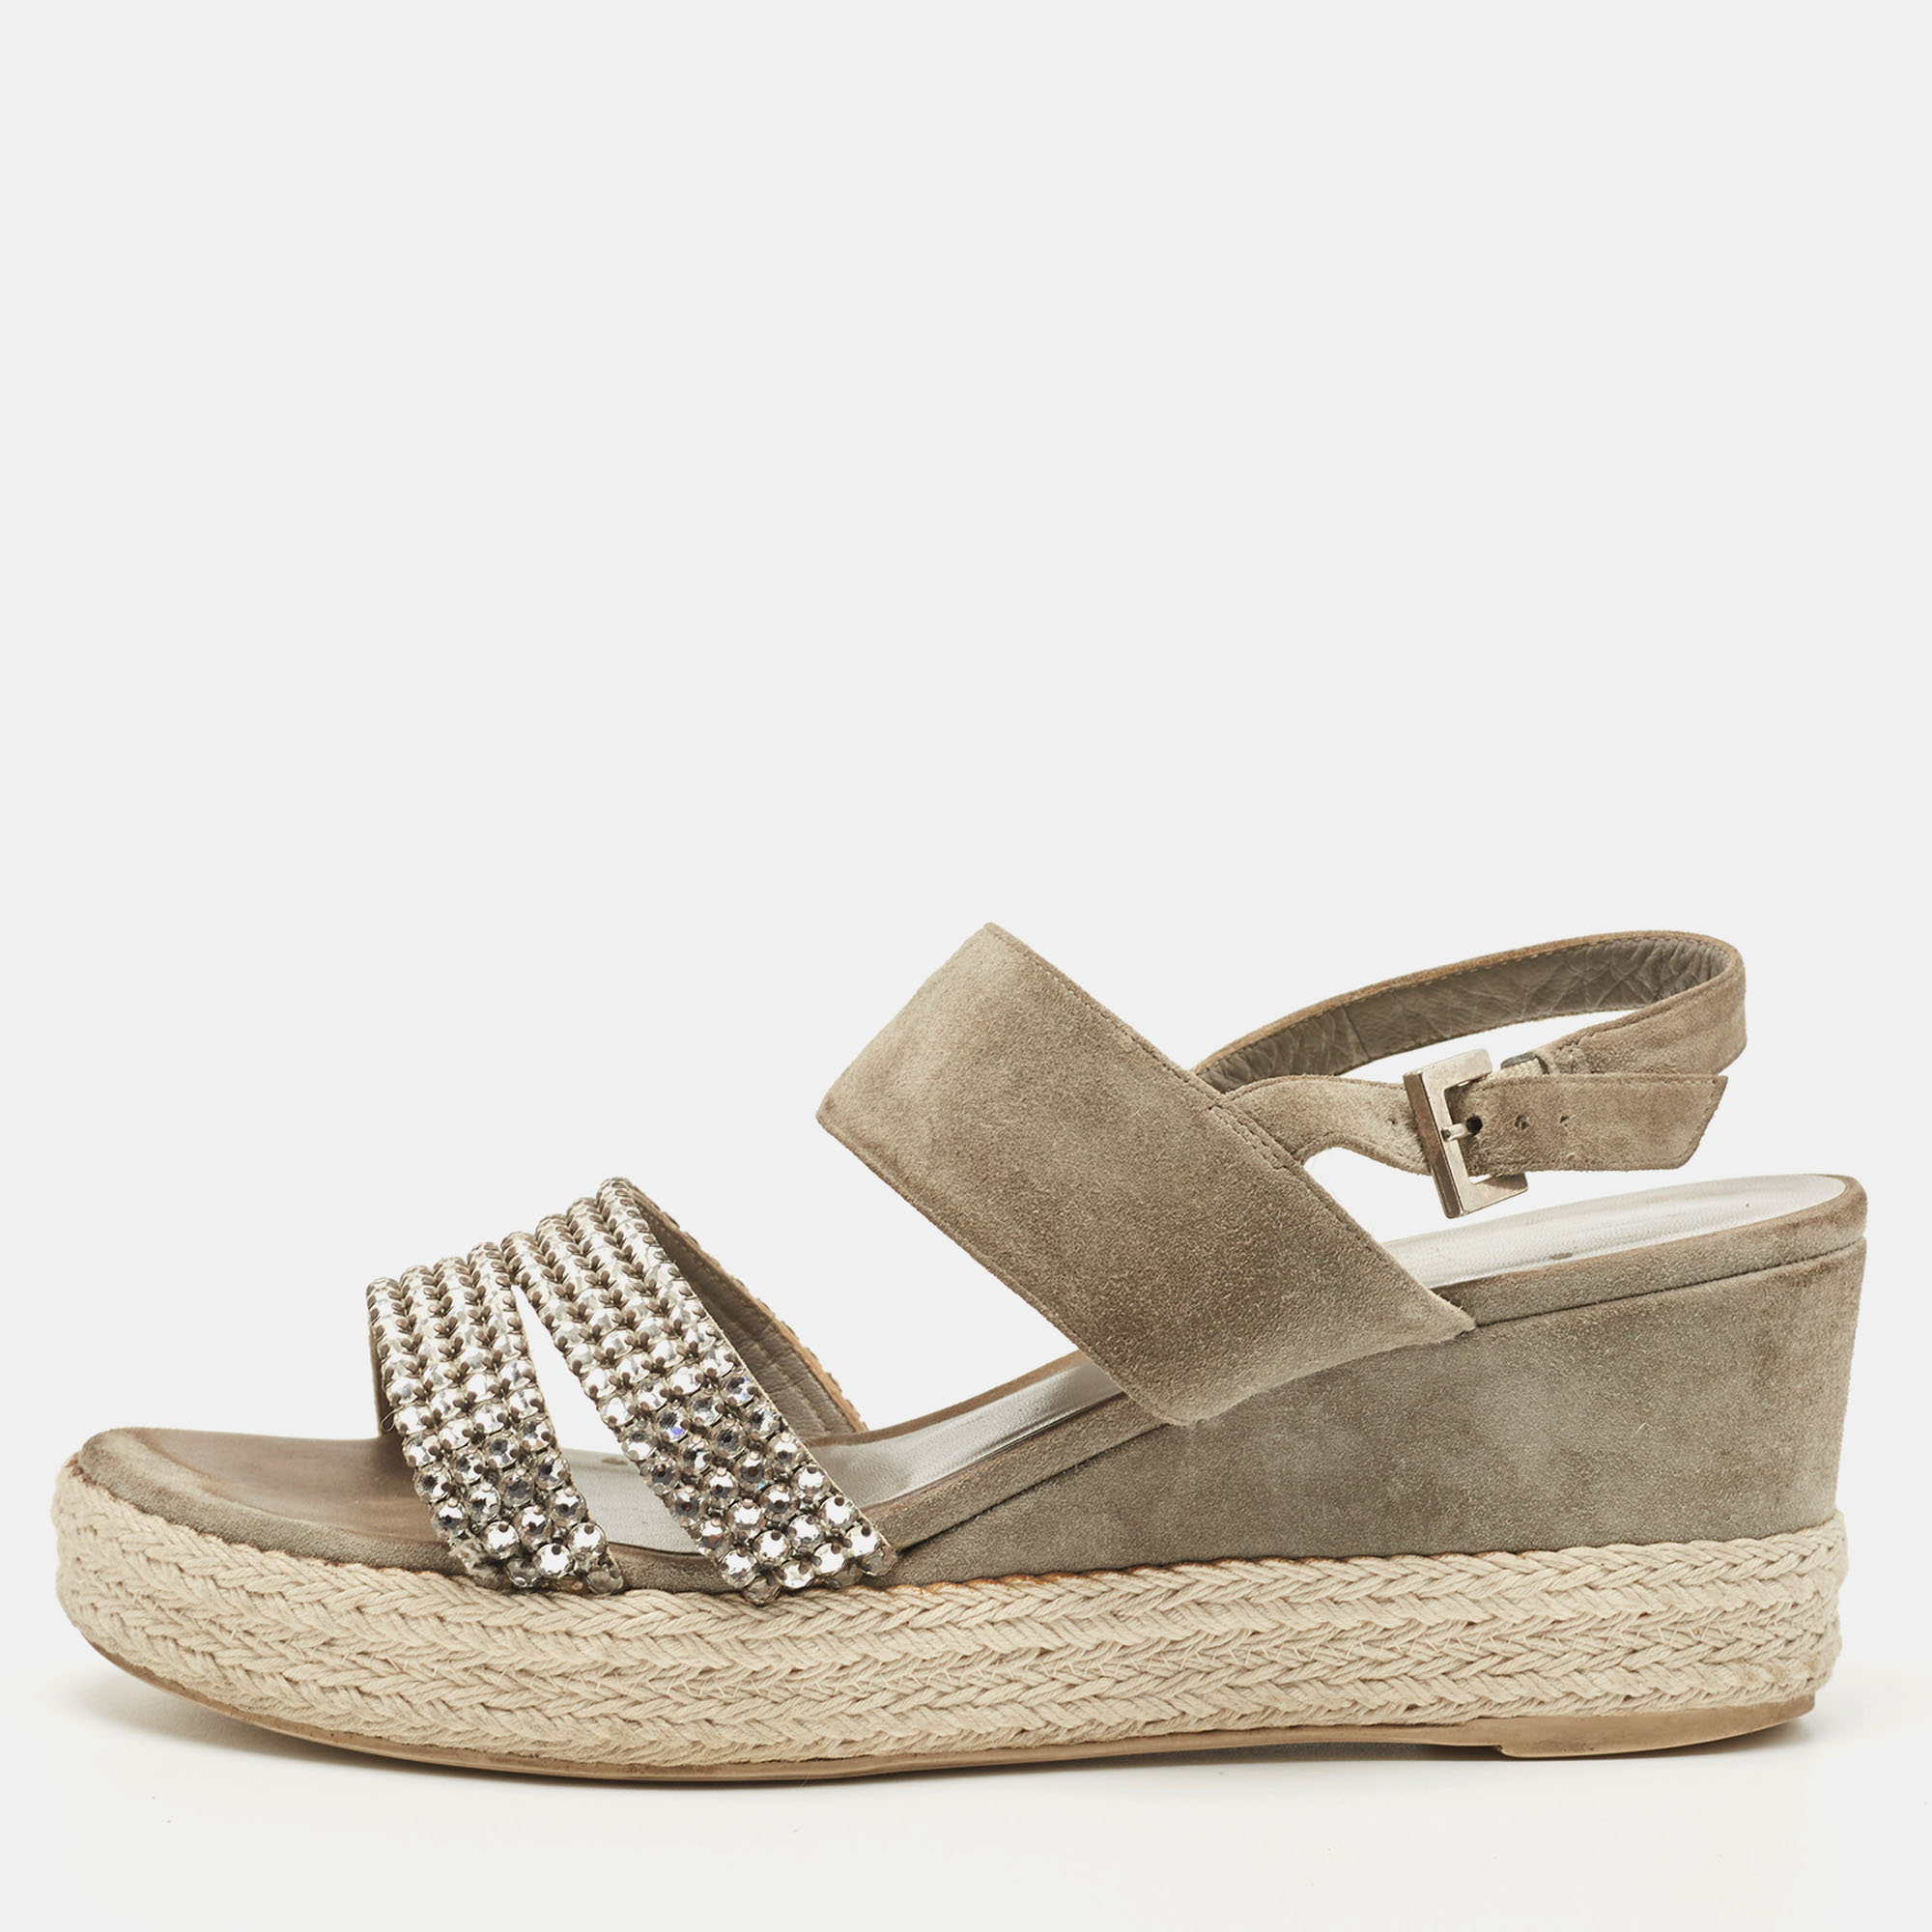 Gina Grey Suede Crystal Embellished Open Toe Espadrille Sandals Size 38